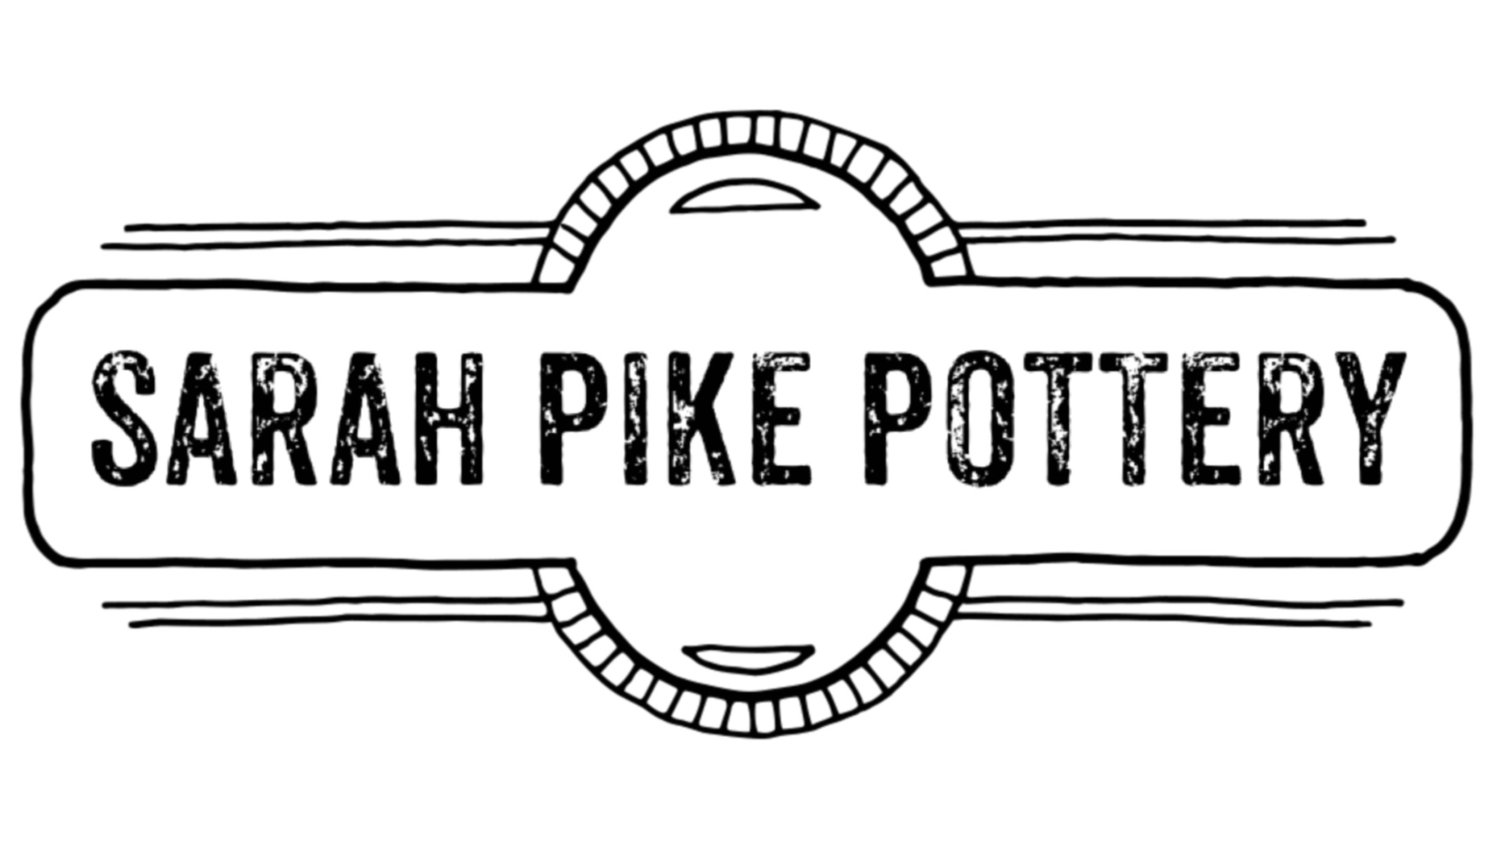 Sarah Pike Pottery